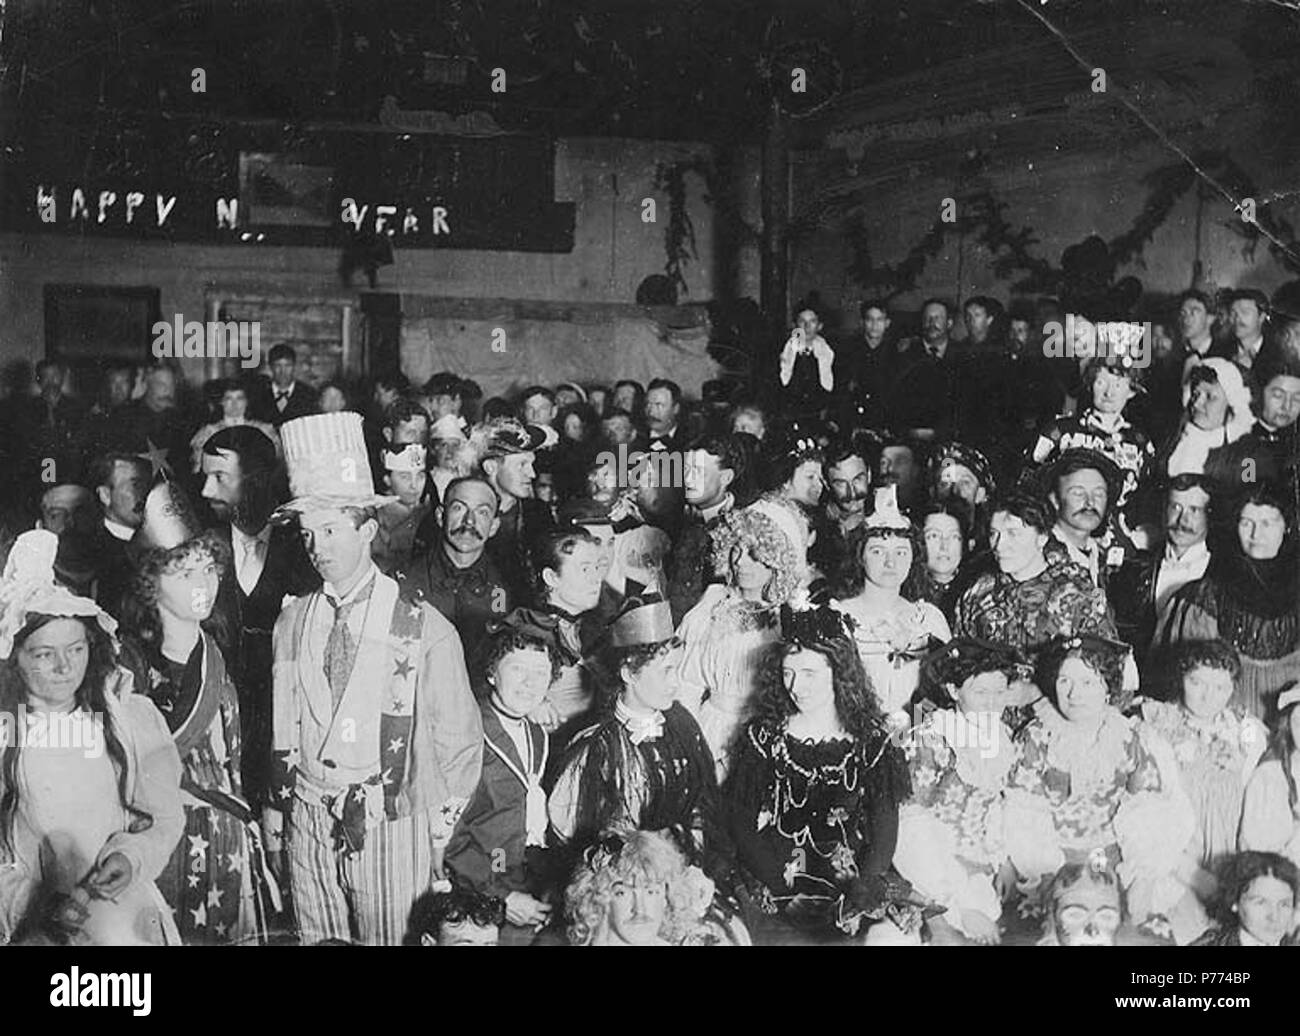 . Englisch: Maskenball zu feiern das neue Jahr, Pioneer Hall, Dawson City, Yukon Territory, Ca. 1899. Englisch: Themen (LCTGM): Bälle (Parteien) ------ Yukon Dawson; Neues Jahr ------ Yukon Dawson; Maskeraden - Yukon - Dawson. ca. 1899 8 Maskenball zu feiern das neue Jahr, Pioneer Hall, Dawson City, Yukon Territory, ca 1899 (HEGG 645) Stockfoto